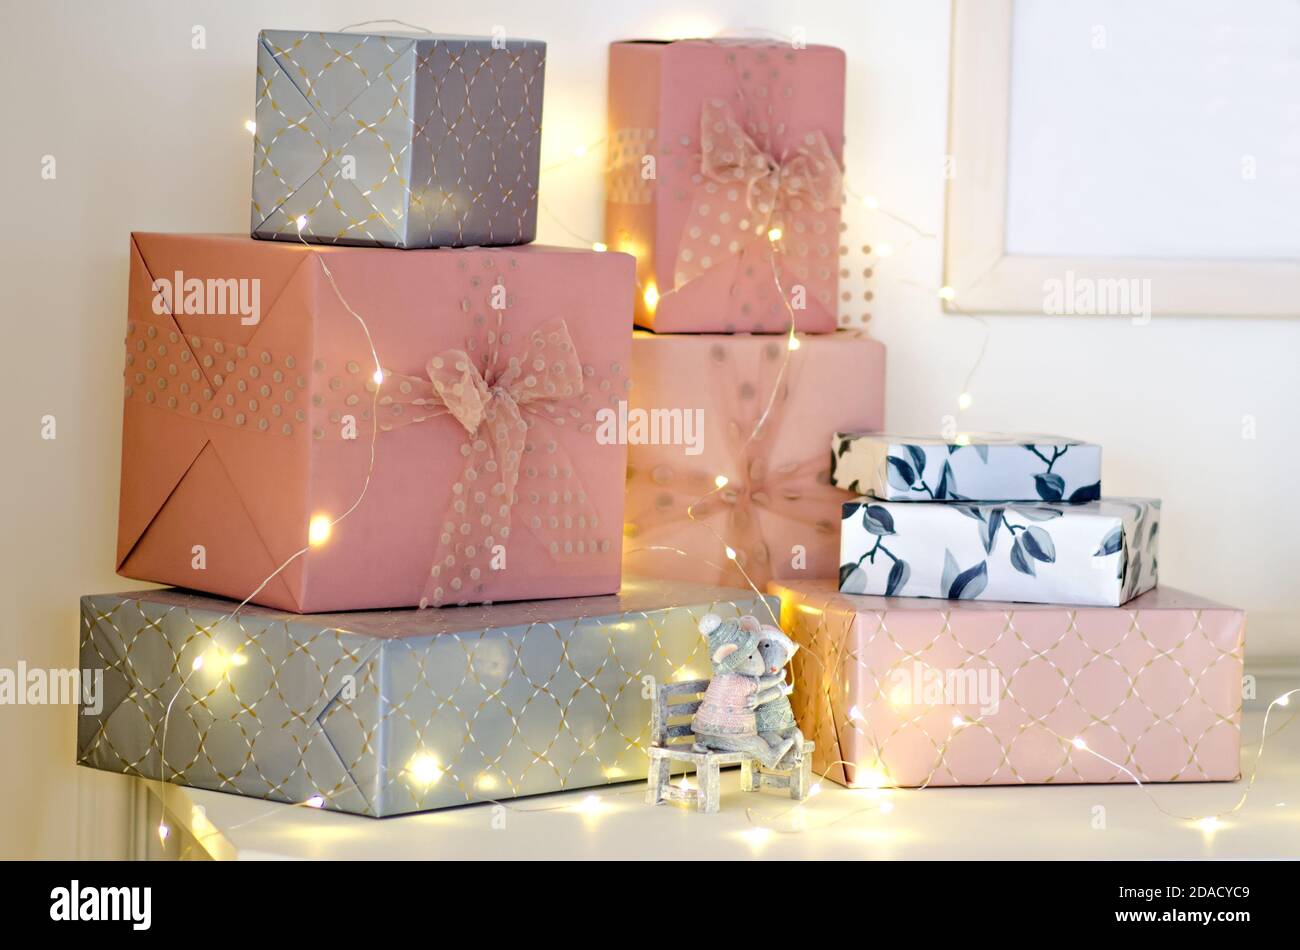 dorada/plateada/roja Arcos de árbol de Navidad con purpurina,Envoltura de Regalos de Decoración Brillo de Arcos de Cinta de Navidad Paquete de 3 lazos con purpurina de Navidad lazos de lentejuelas 